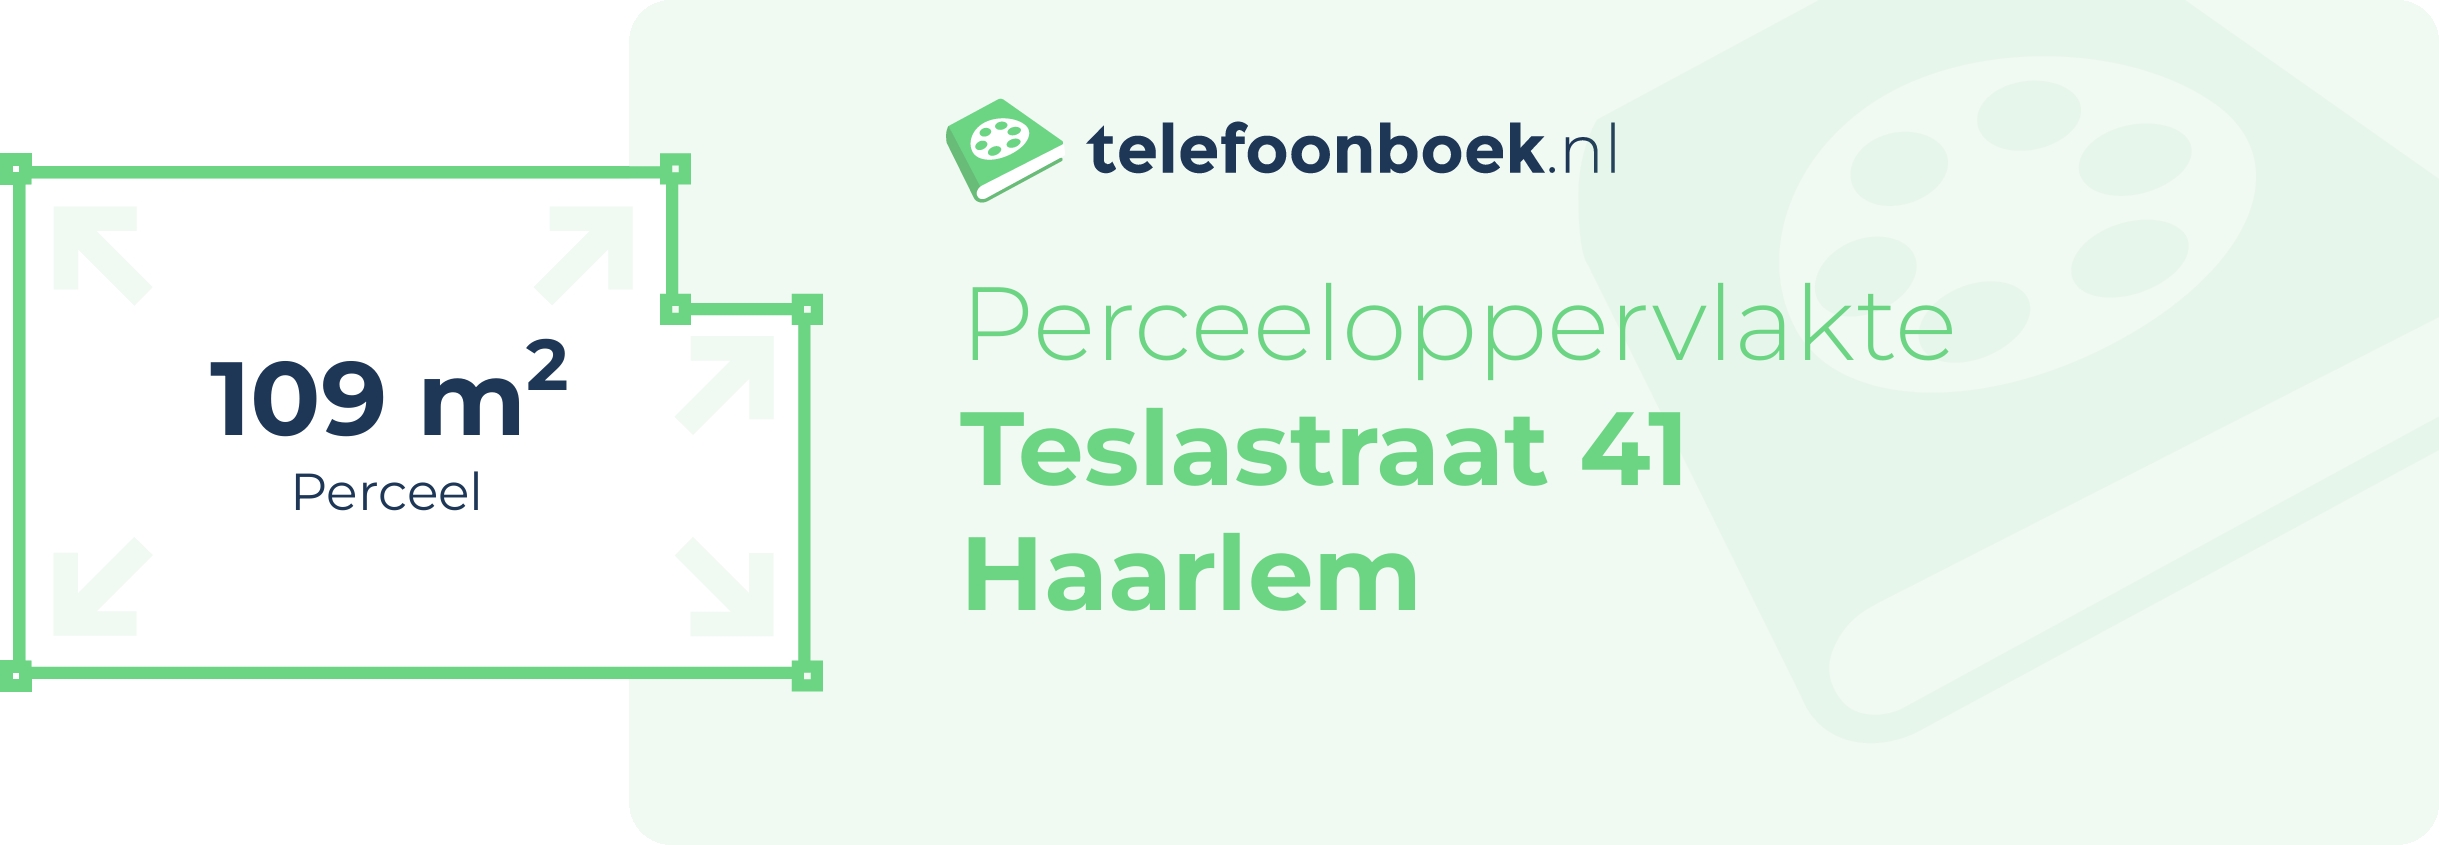 Perceeloppervlakte Teslastraat 41 Haarlem